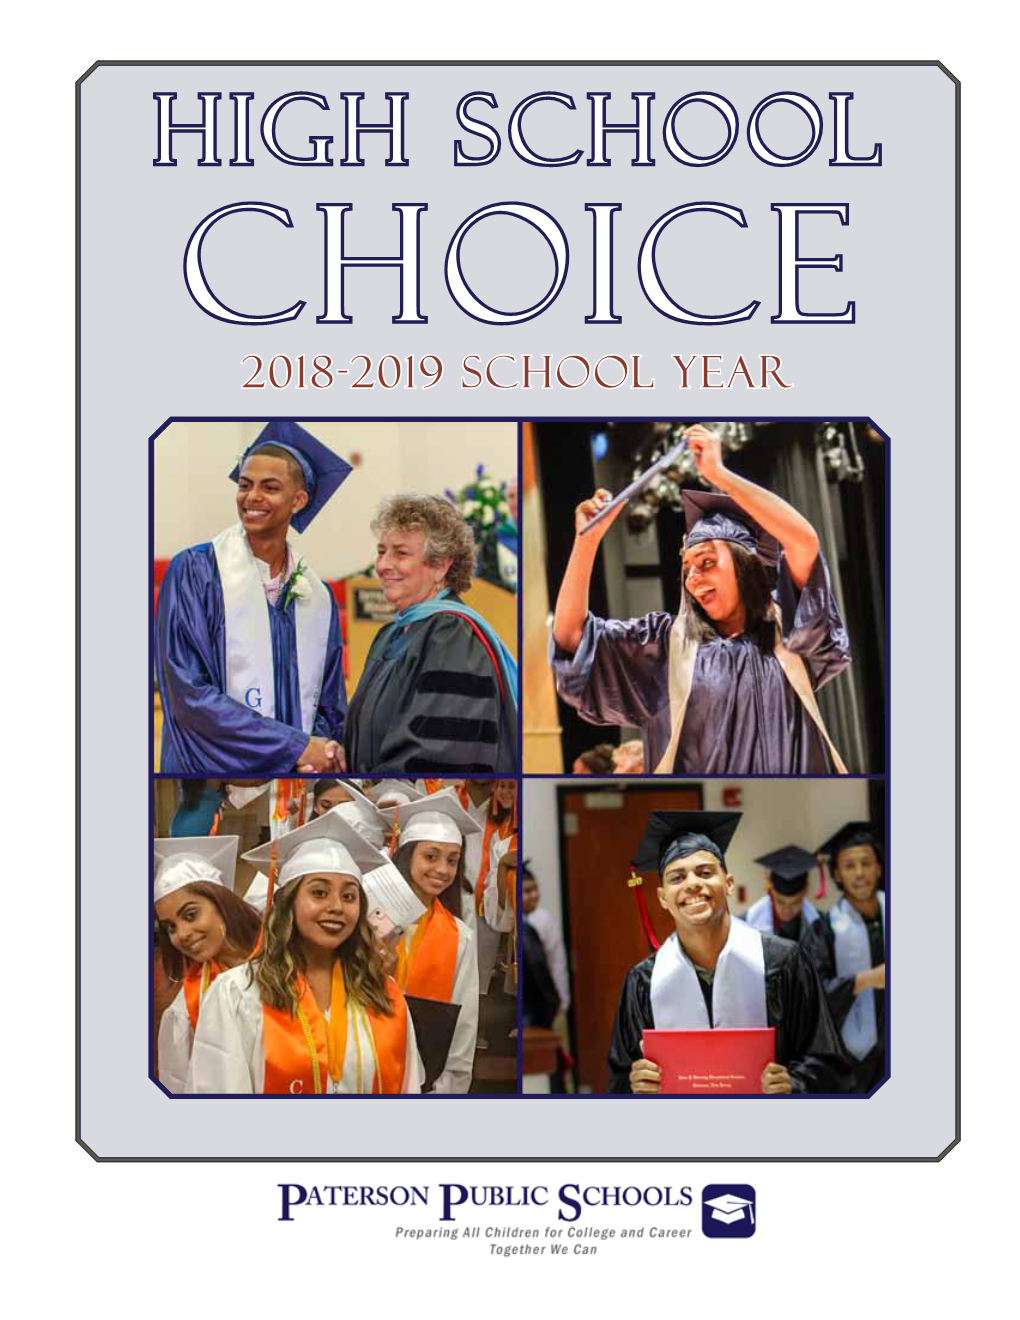 High School Choice 2018-2019 School Year Paterson Public Schools